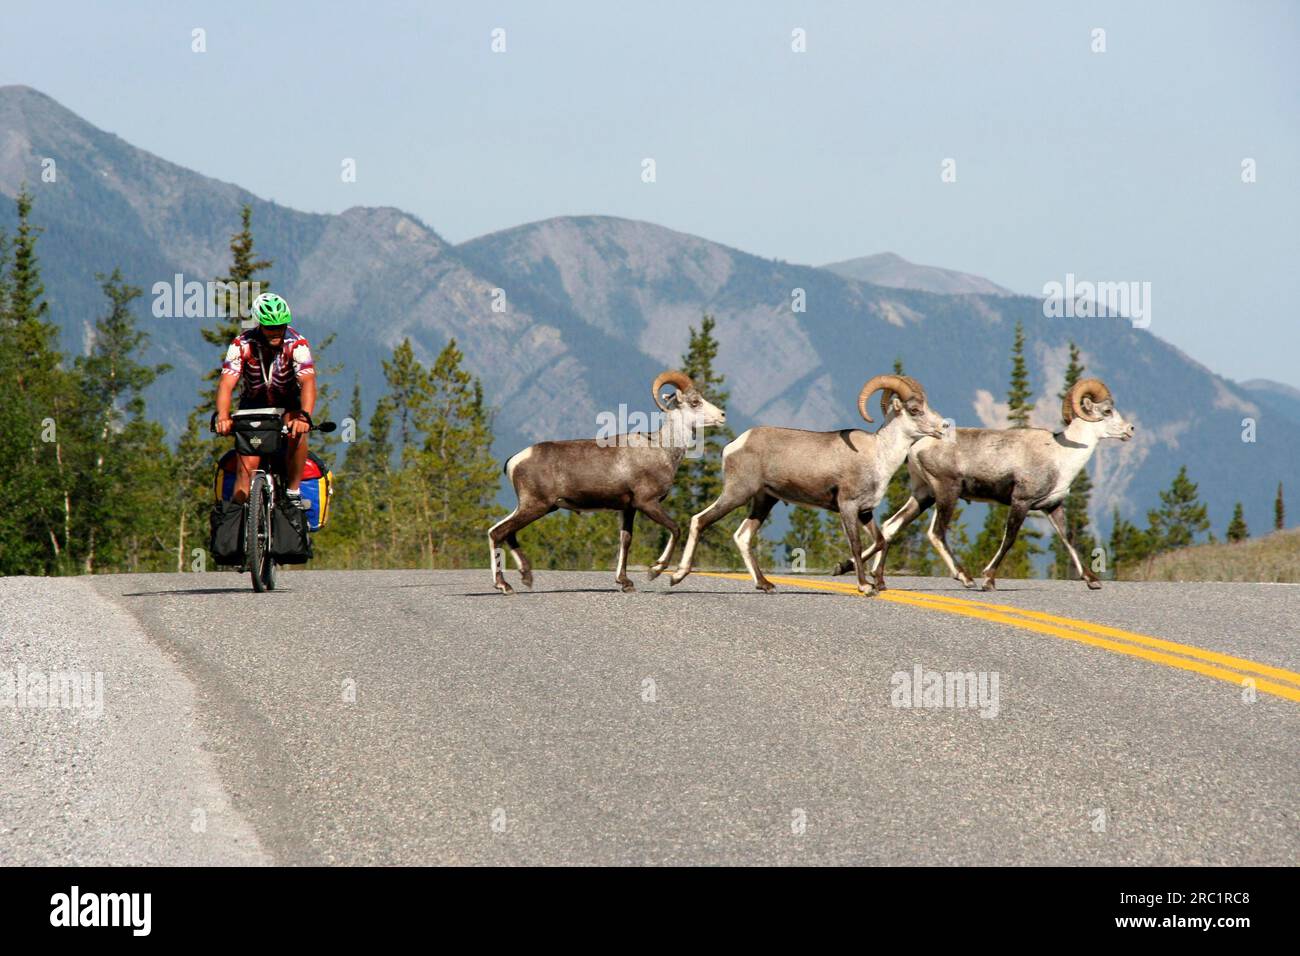 Sheep rams on the Alaska Highway at Muncho Lake, British Columbia, Canada Stock Photo